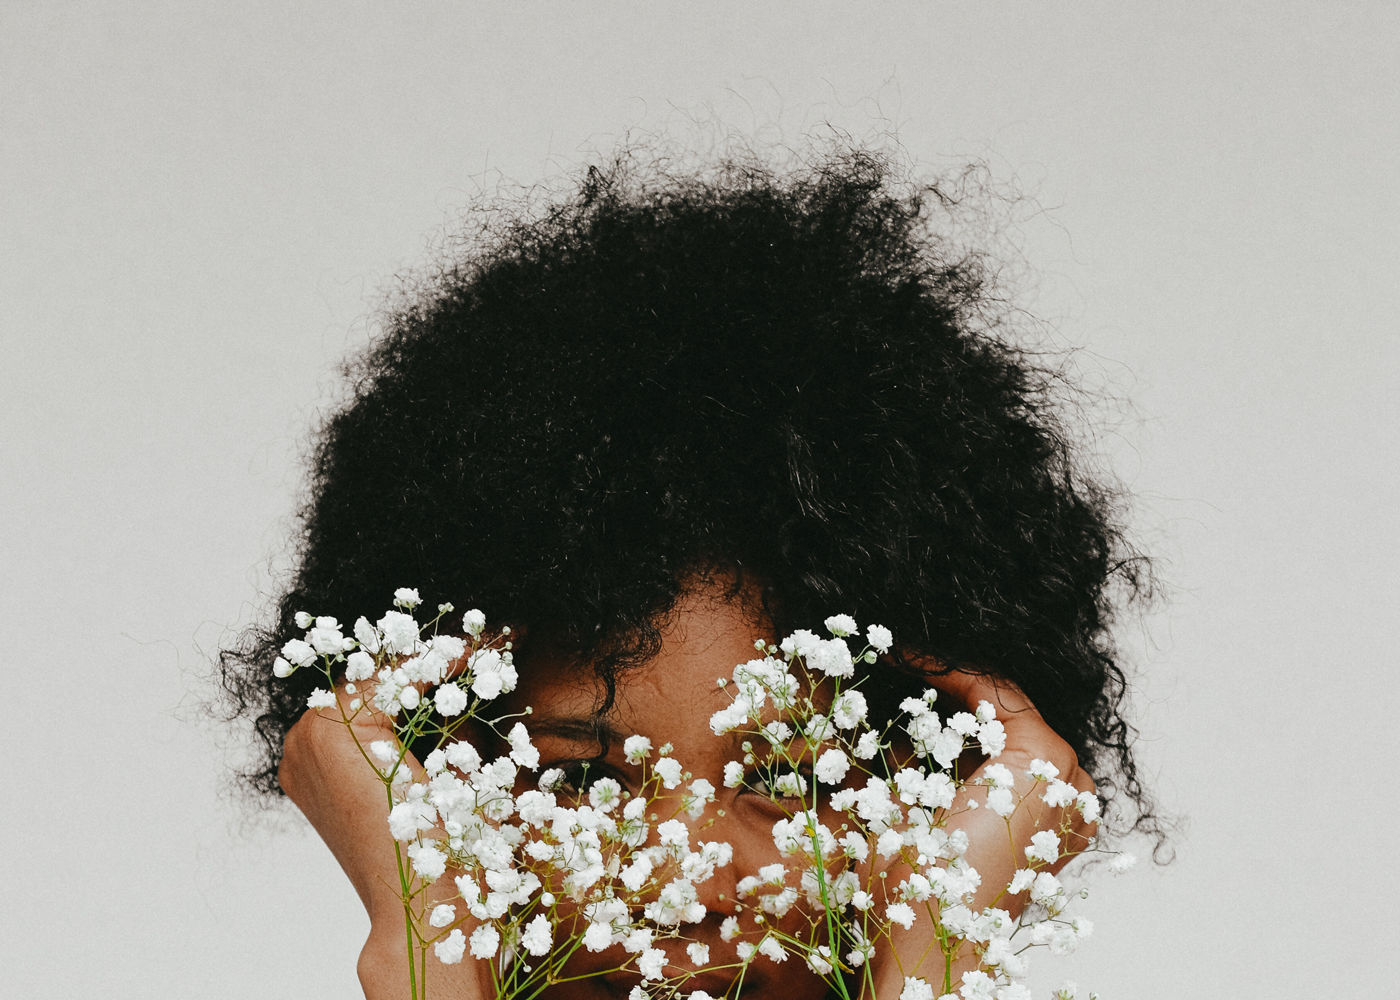 Frau mit Afrohaare deckt ihre Gesicht mit weiße Blumen